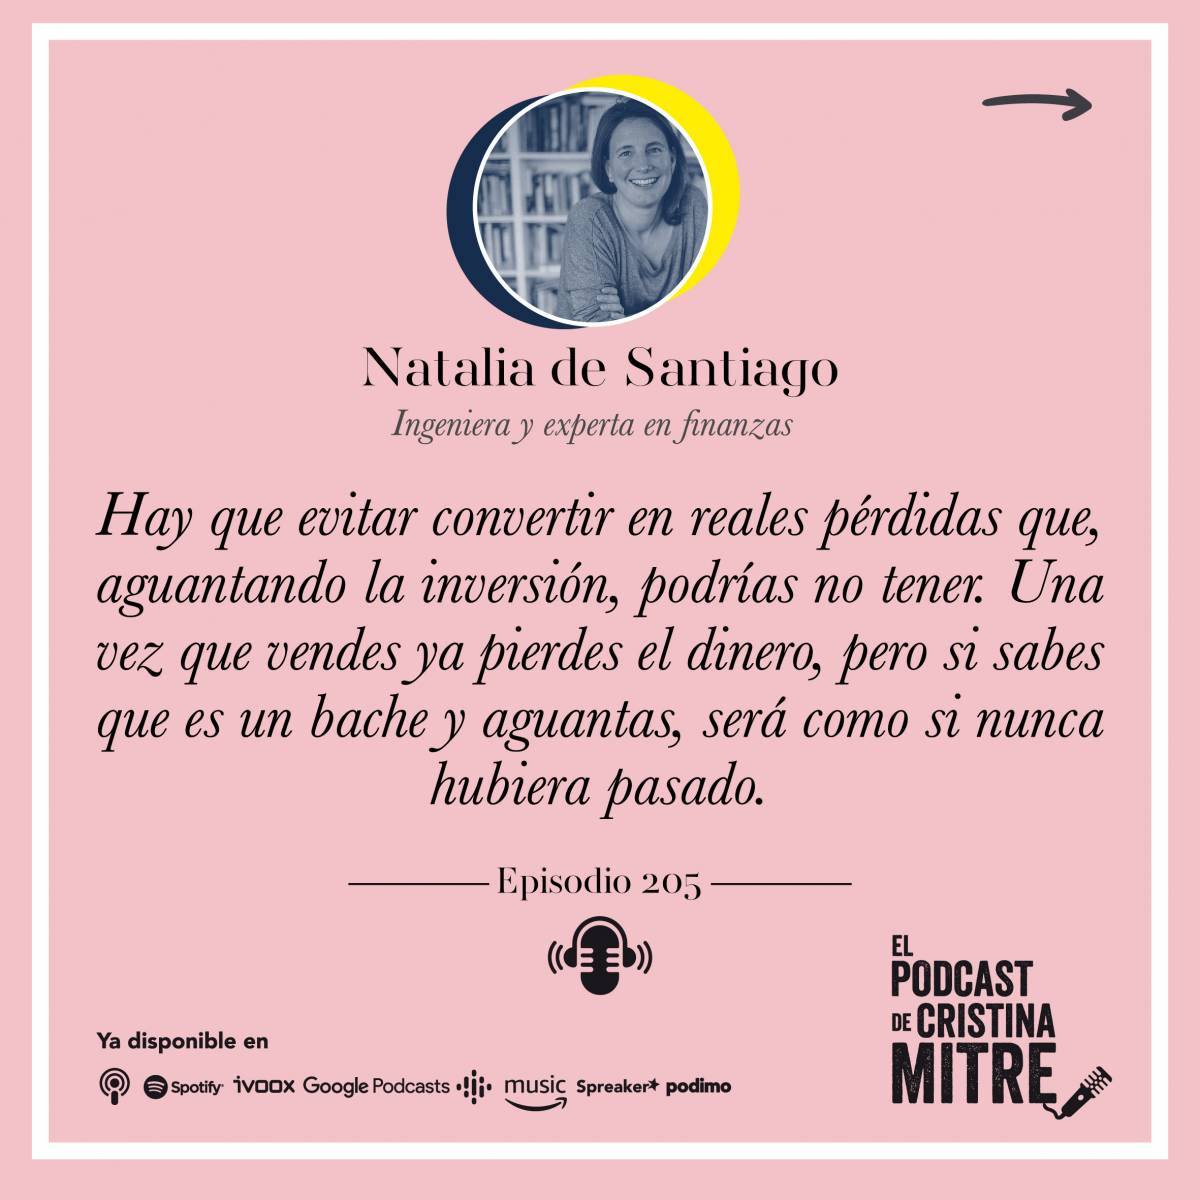 Podcast Cristina Mitre Natalia de Santiago fondos de inversion